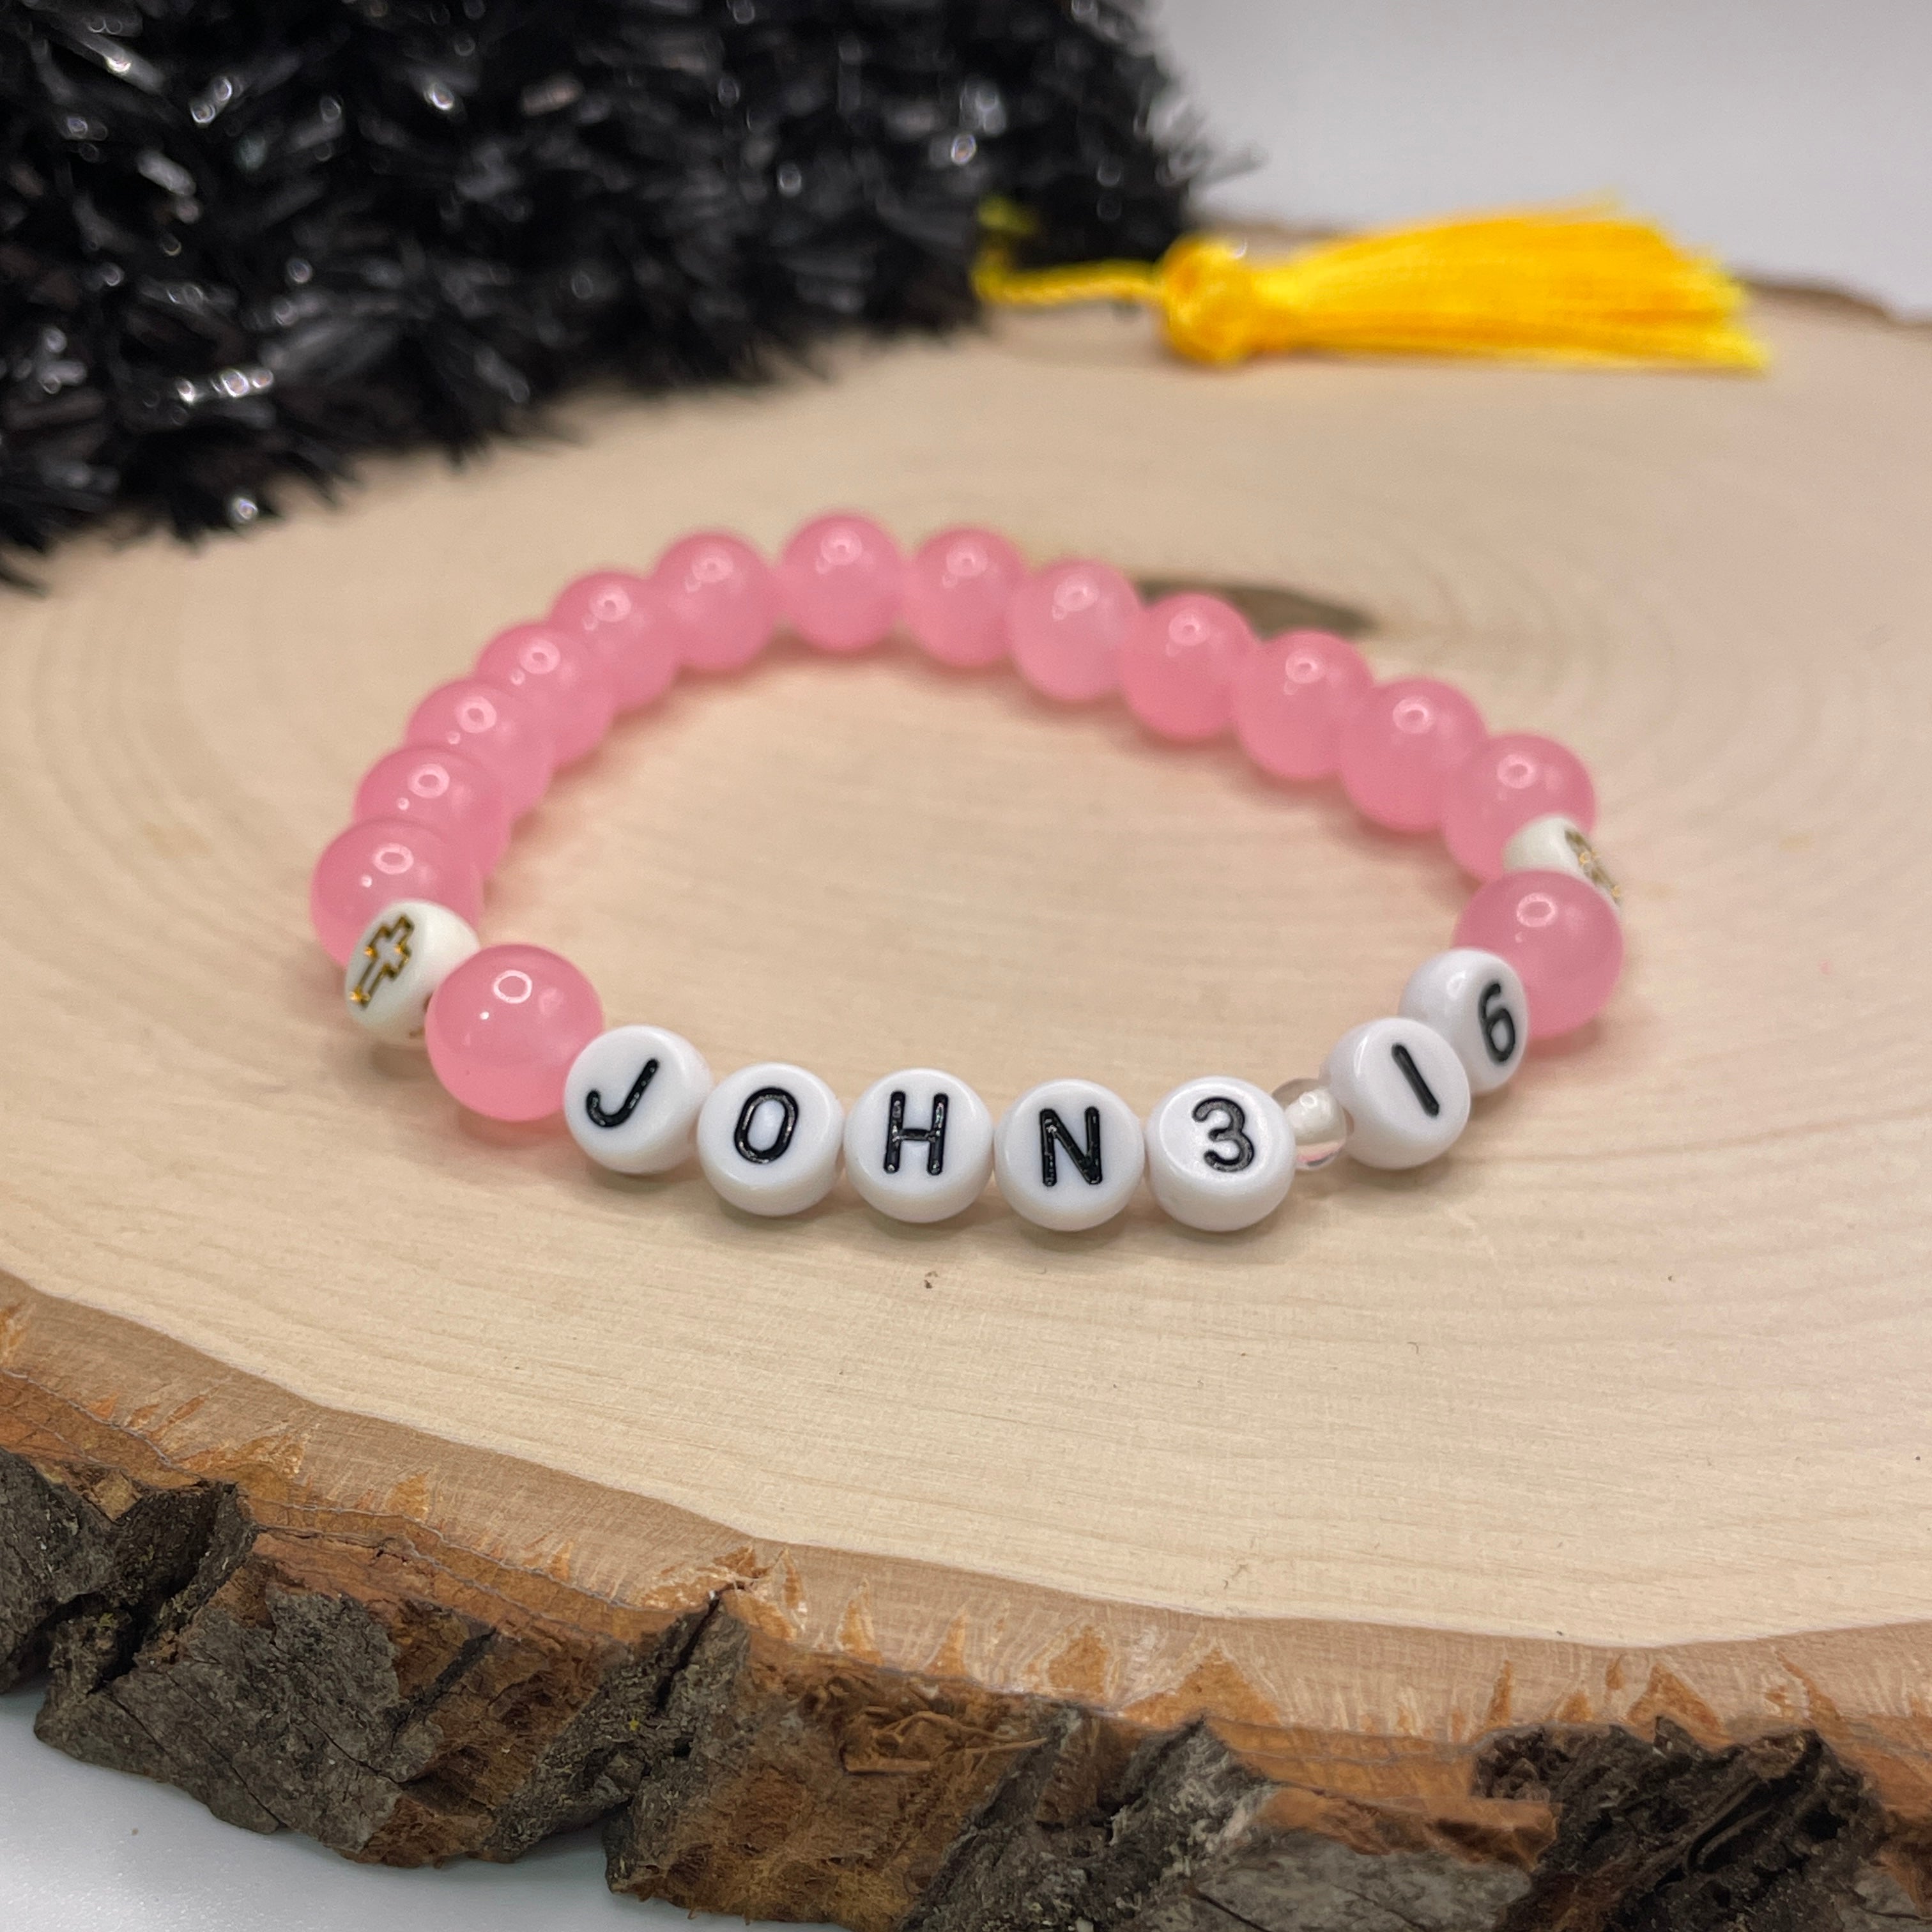 John bracelet